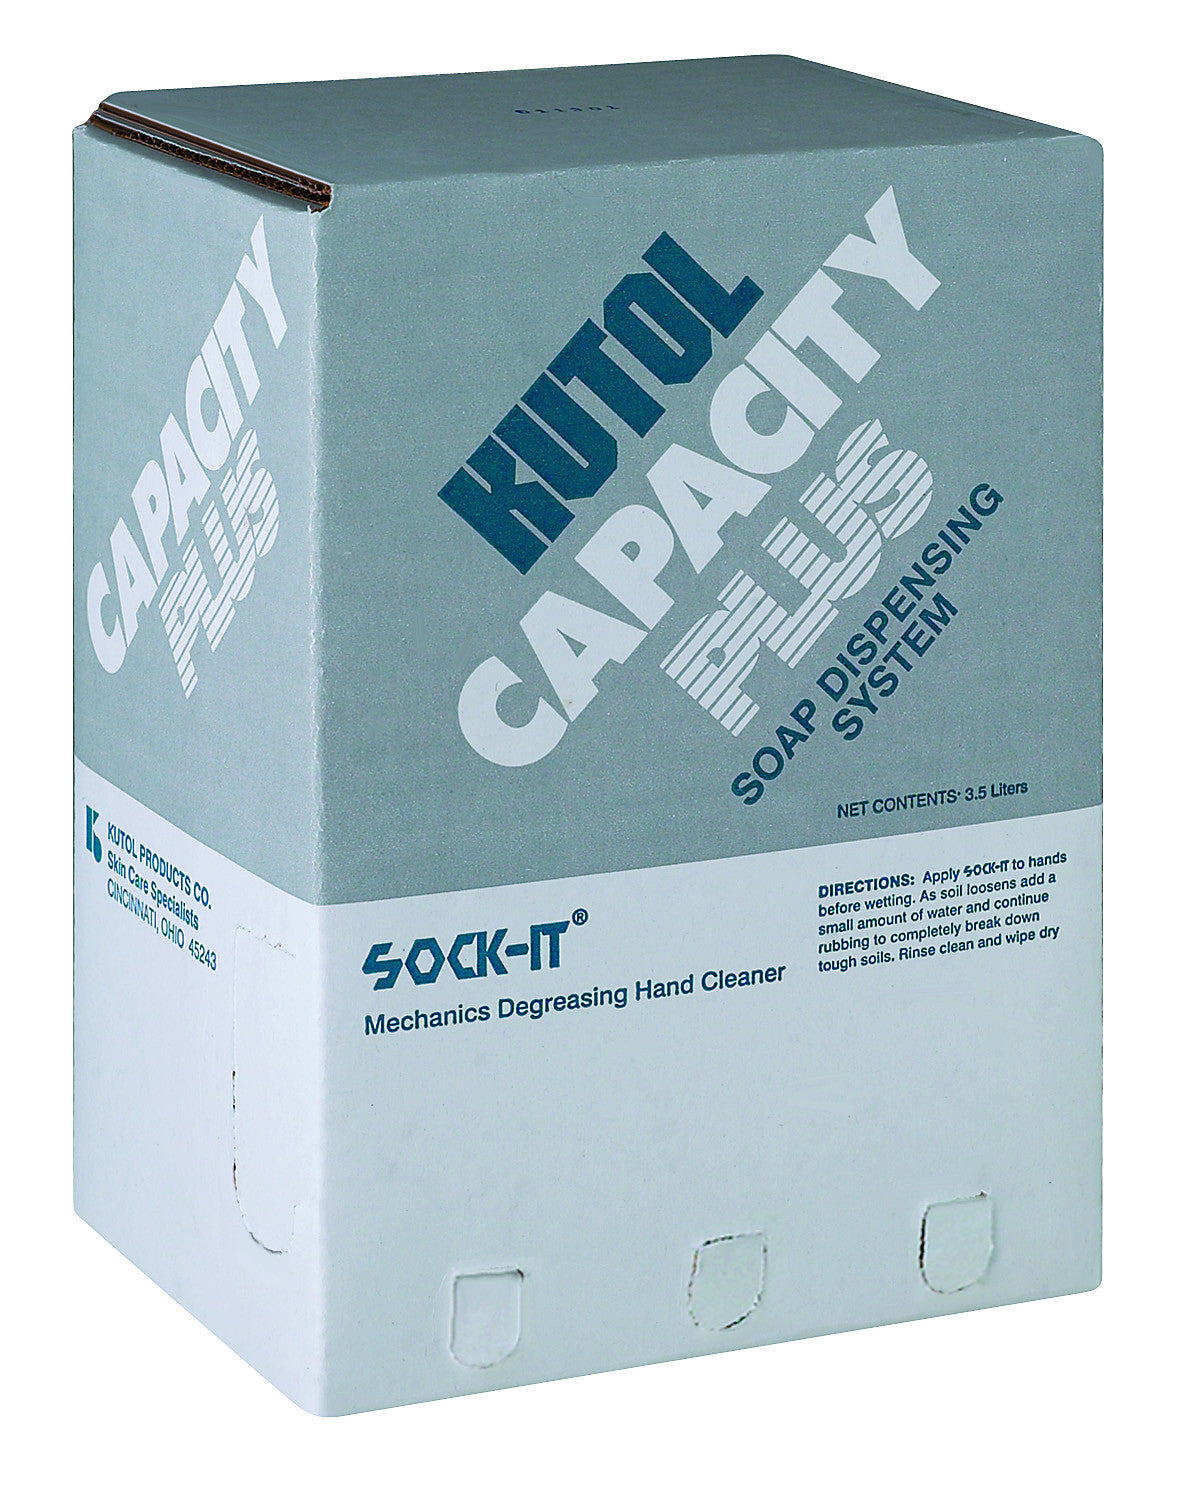 SOAP/ Mechanics/ Capacity Plus/ Sock-it – Croaker, Inc